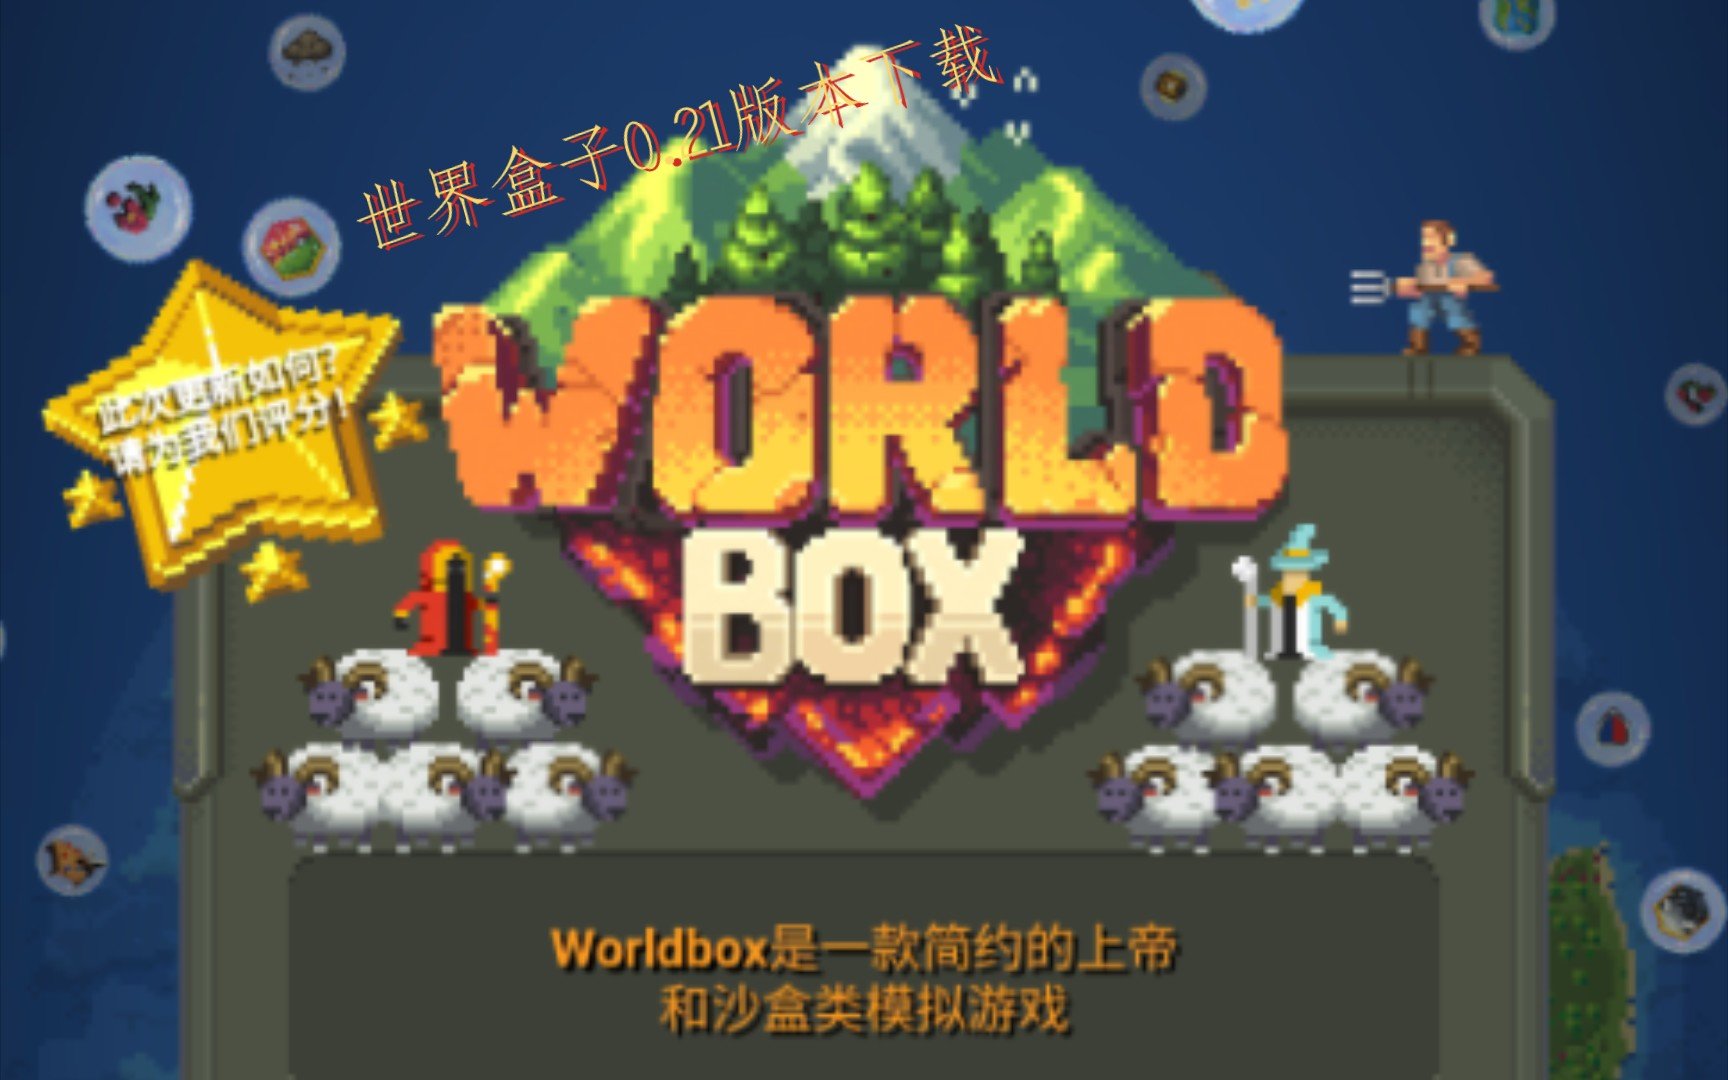 世界盒子0.21.1版本